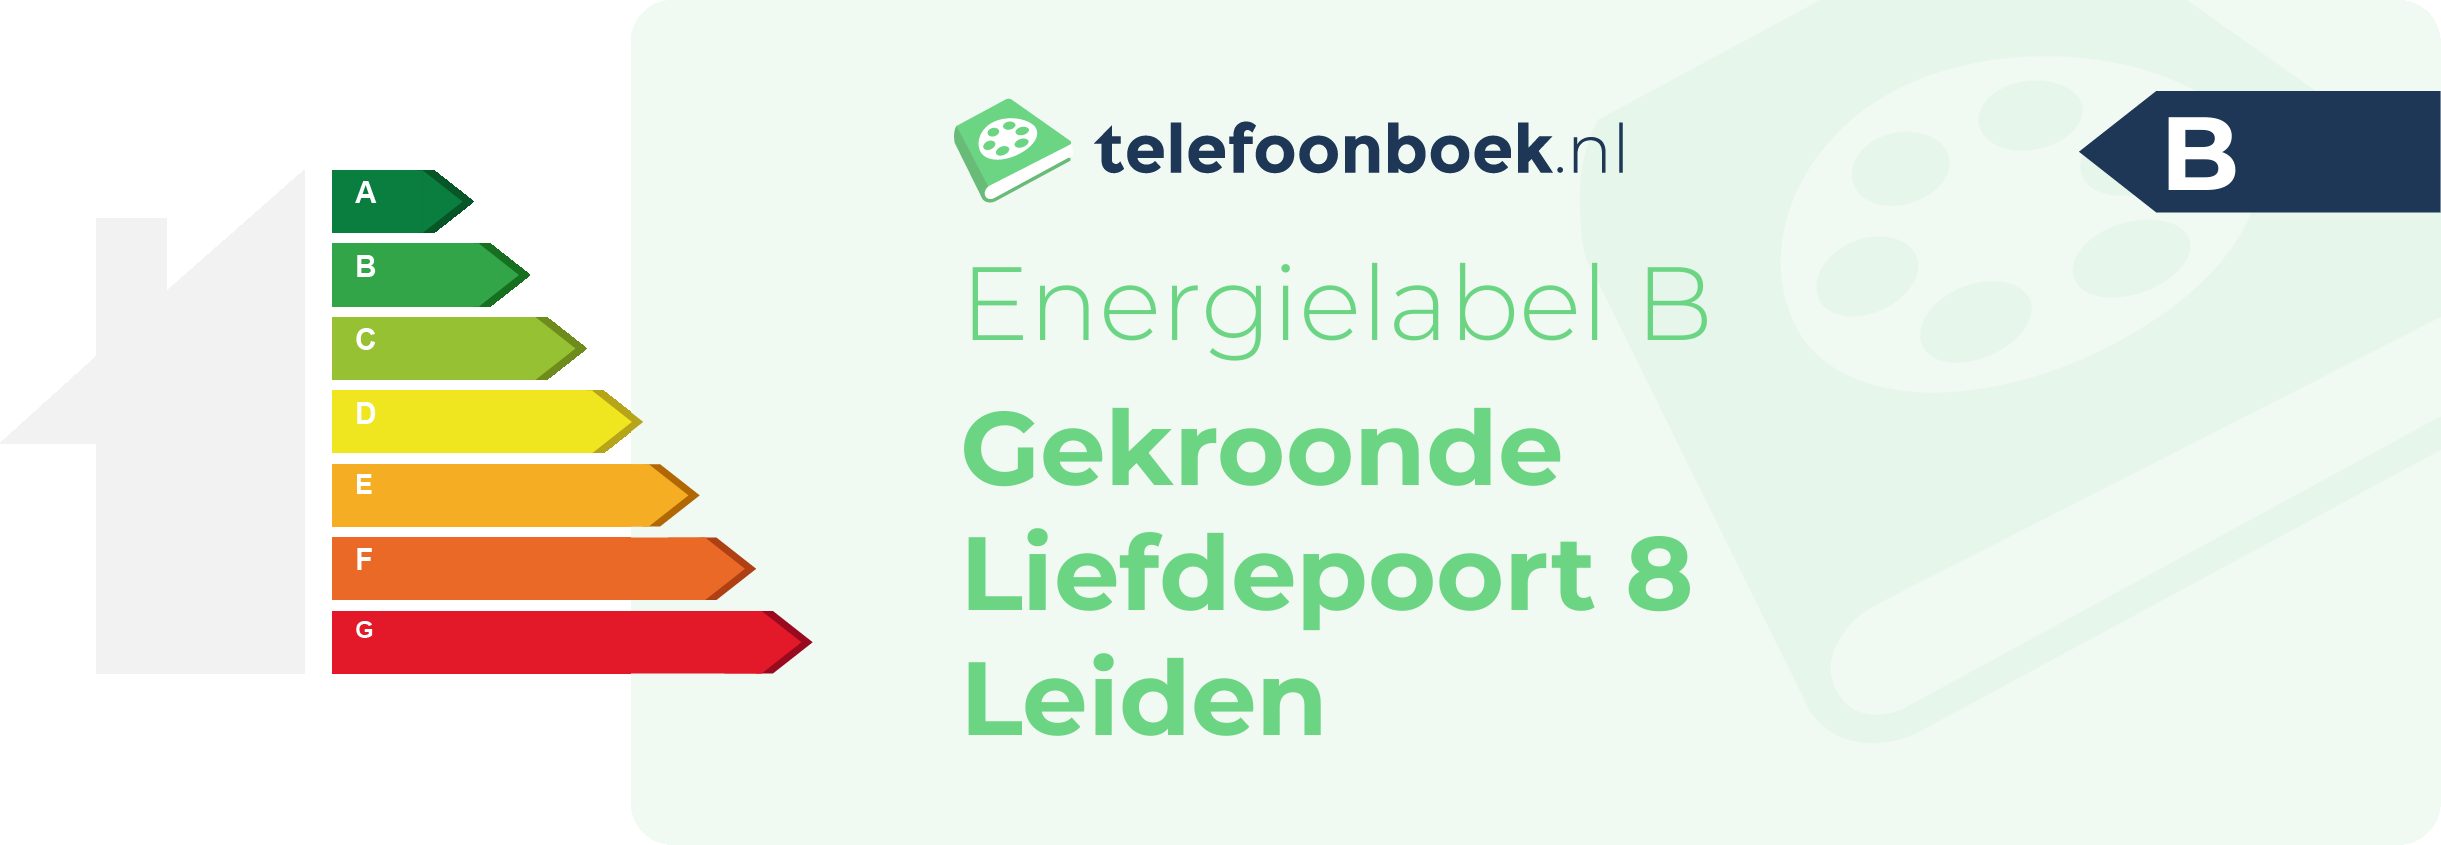 Energielabel Gekroonde Liefdepoort 8 Leiden